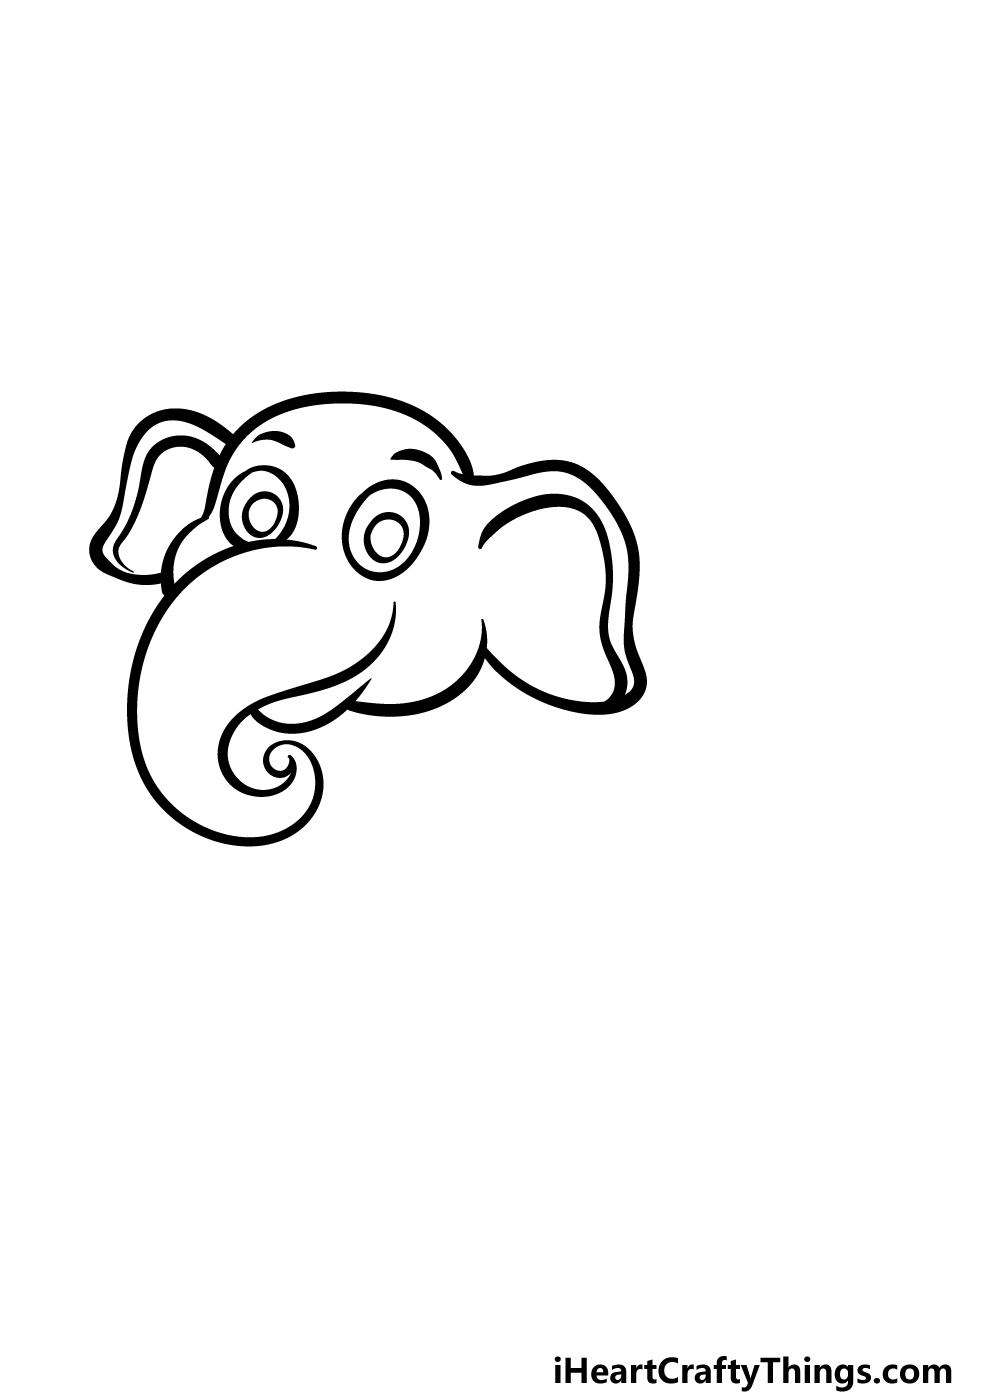 Cartoon Elephant Drawing - How To Draw A Cartoon Elephant Step By Step